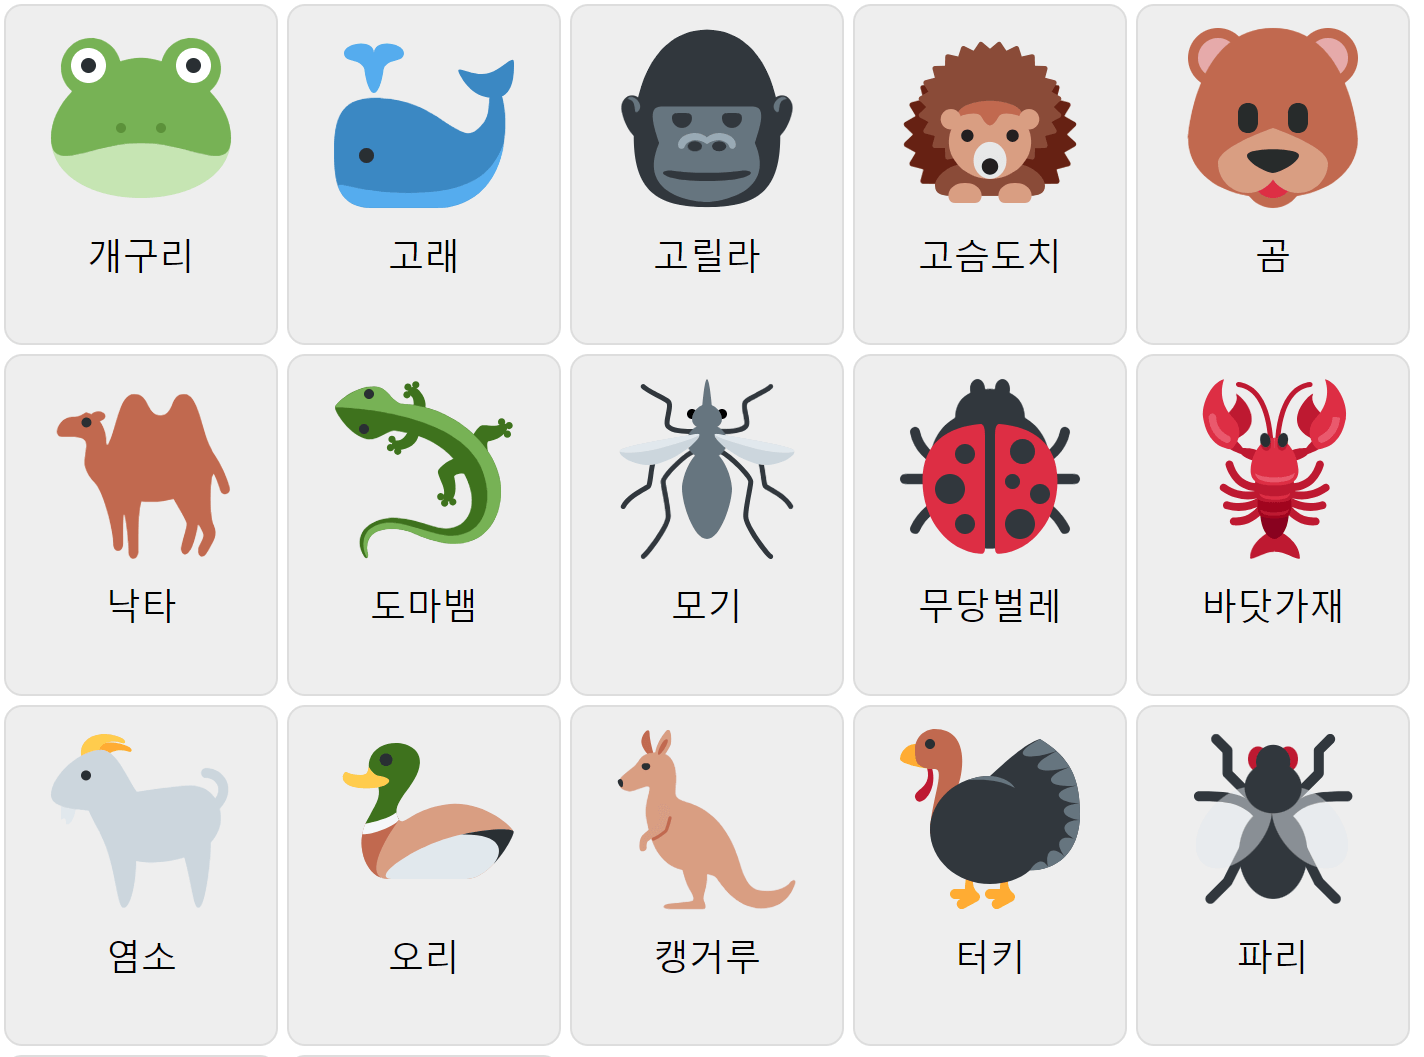 Djur på koreanska 2